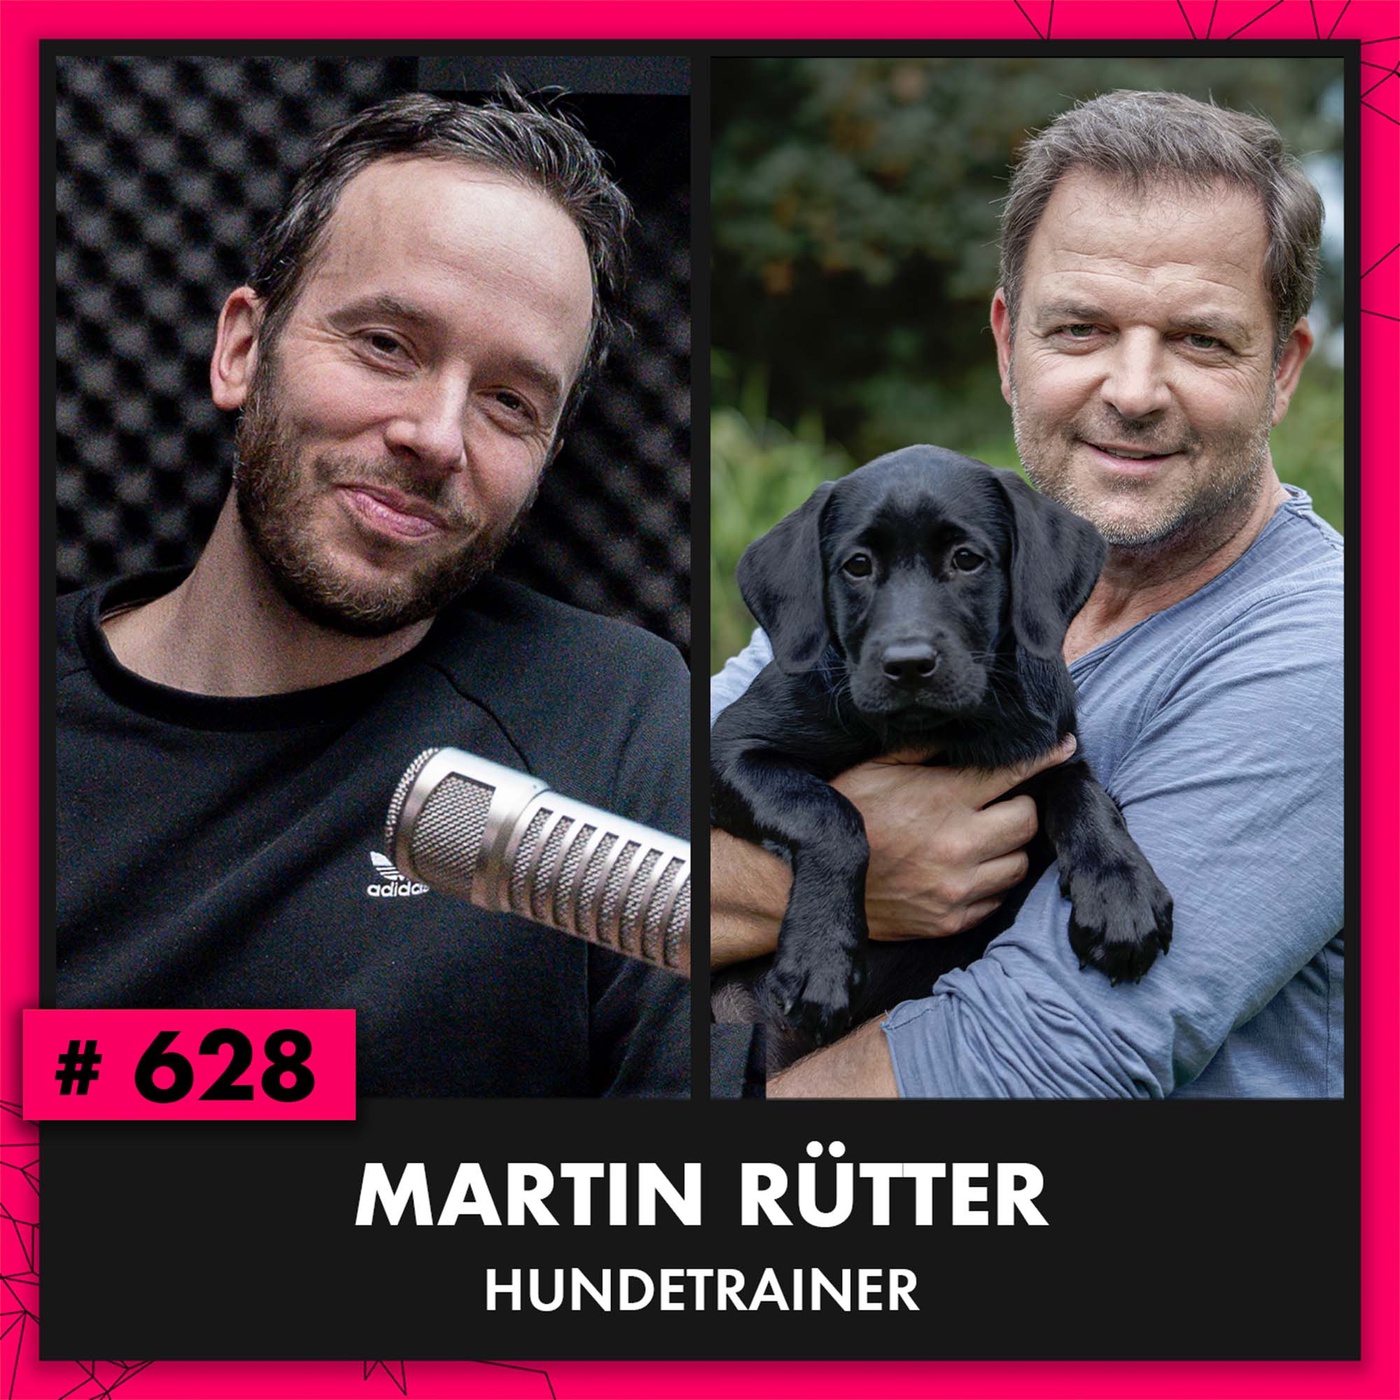 Hundetrainer Martin Rütter (#628)